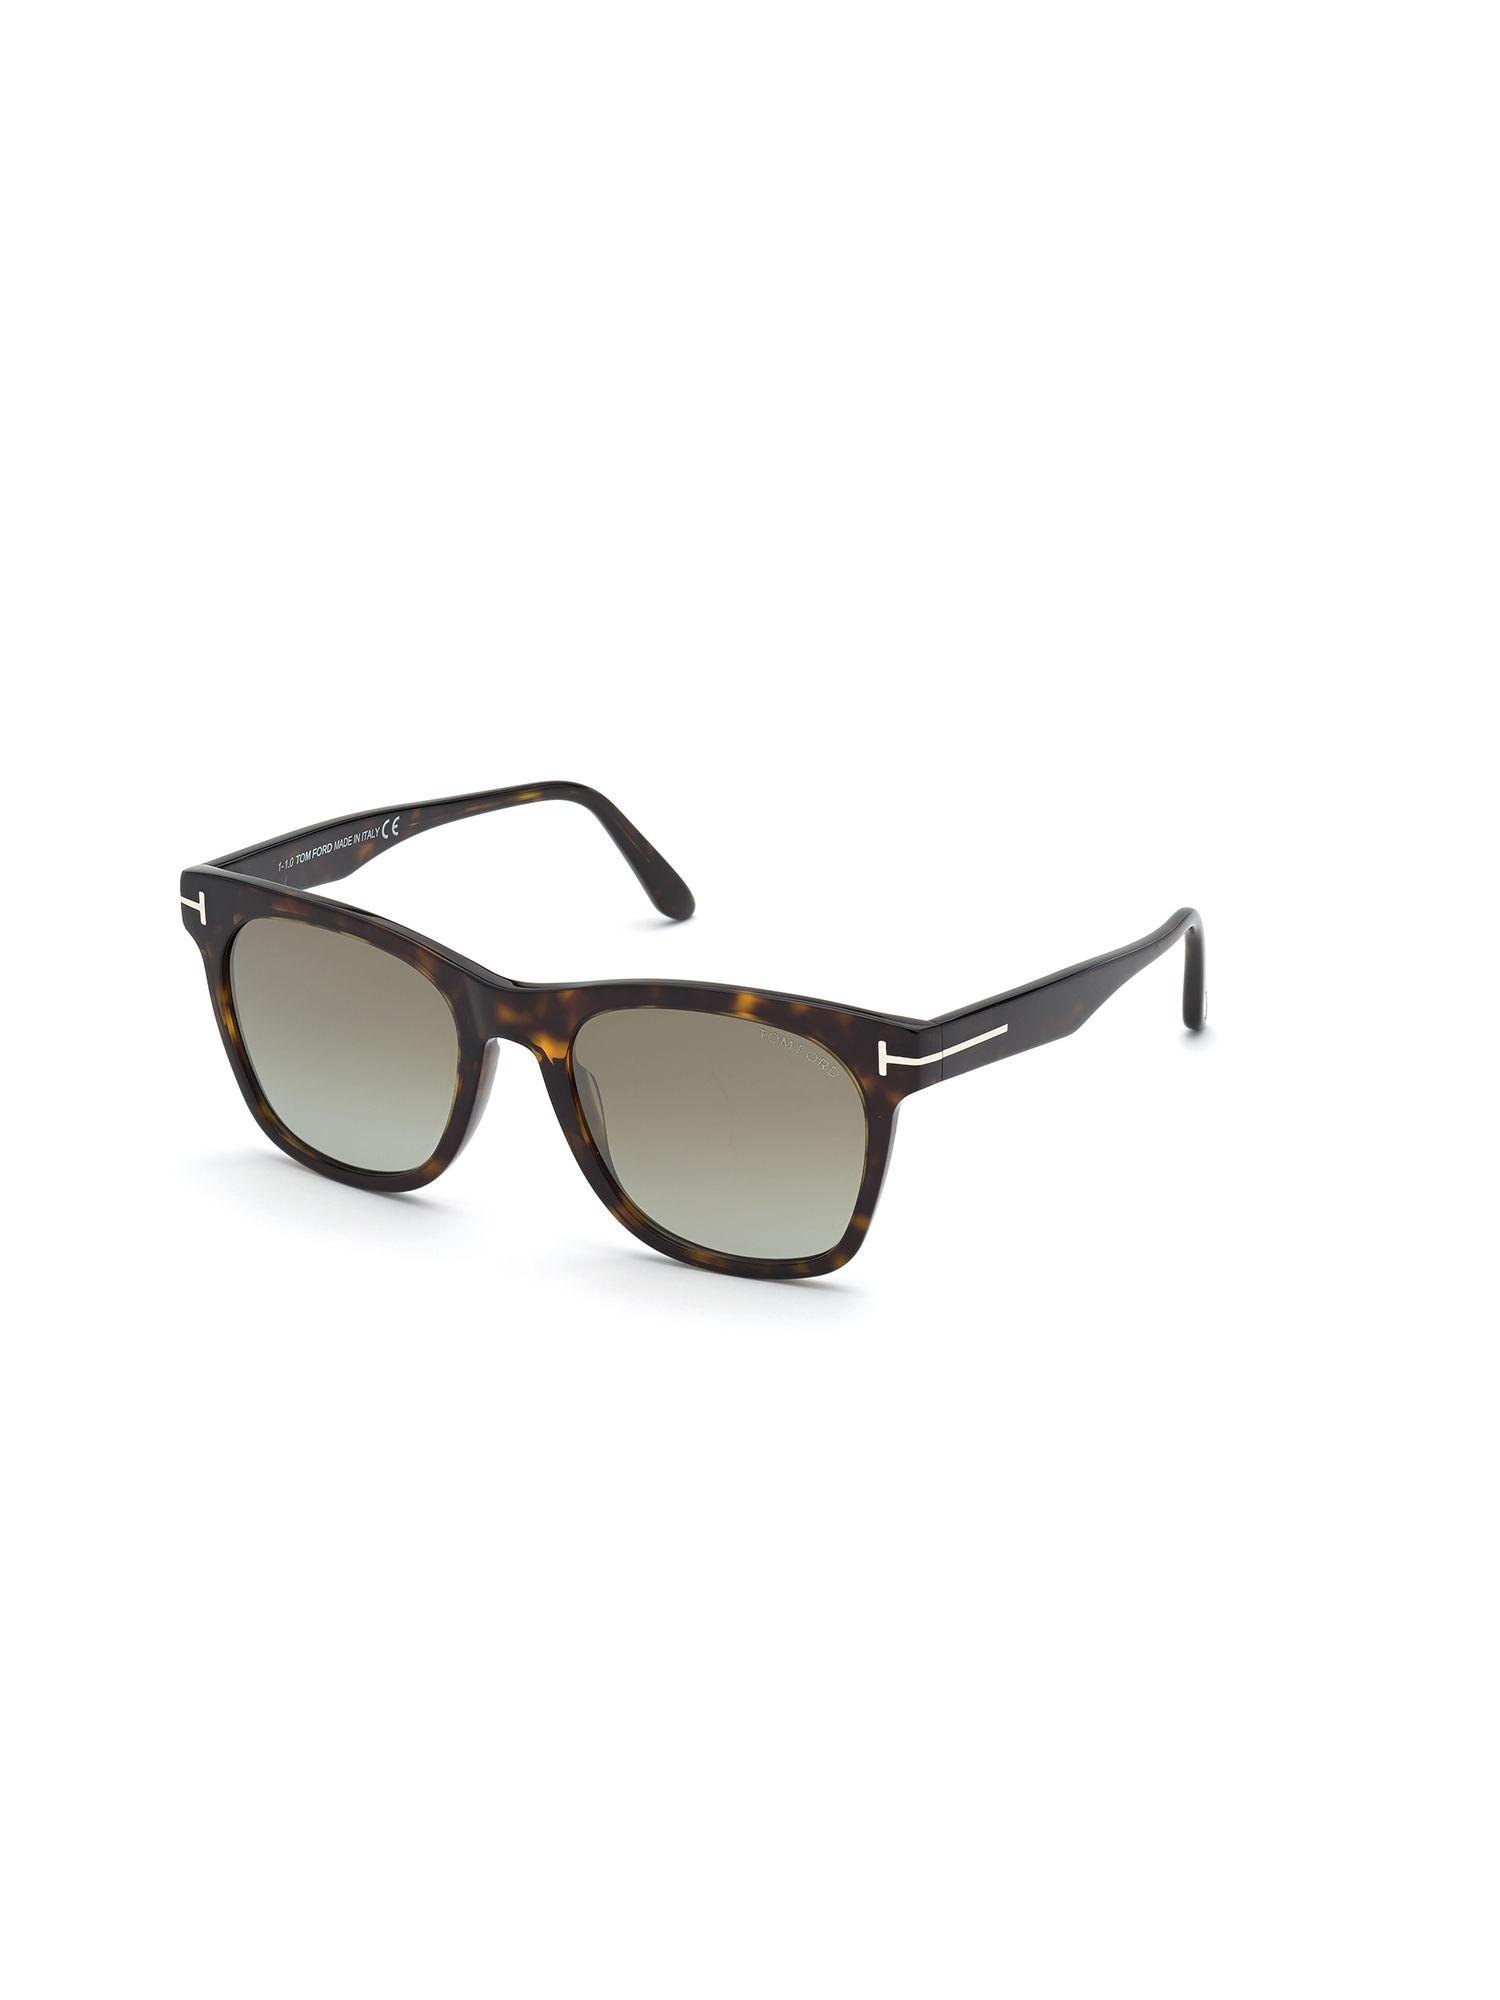 Brown Plastic Sunglasses Ft0833 52 52Q